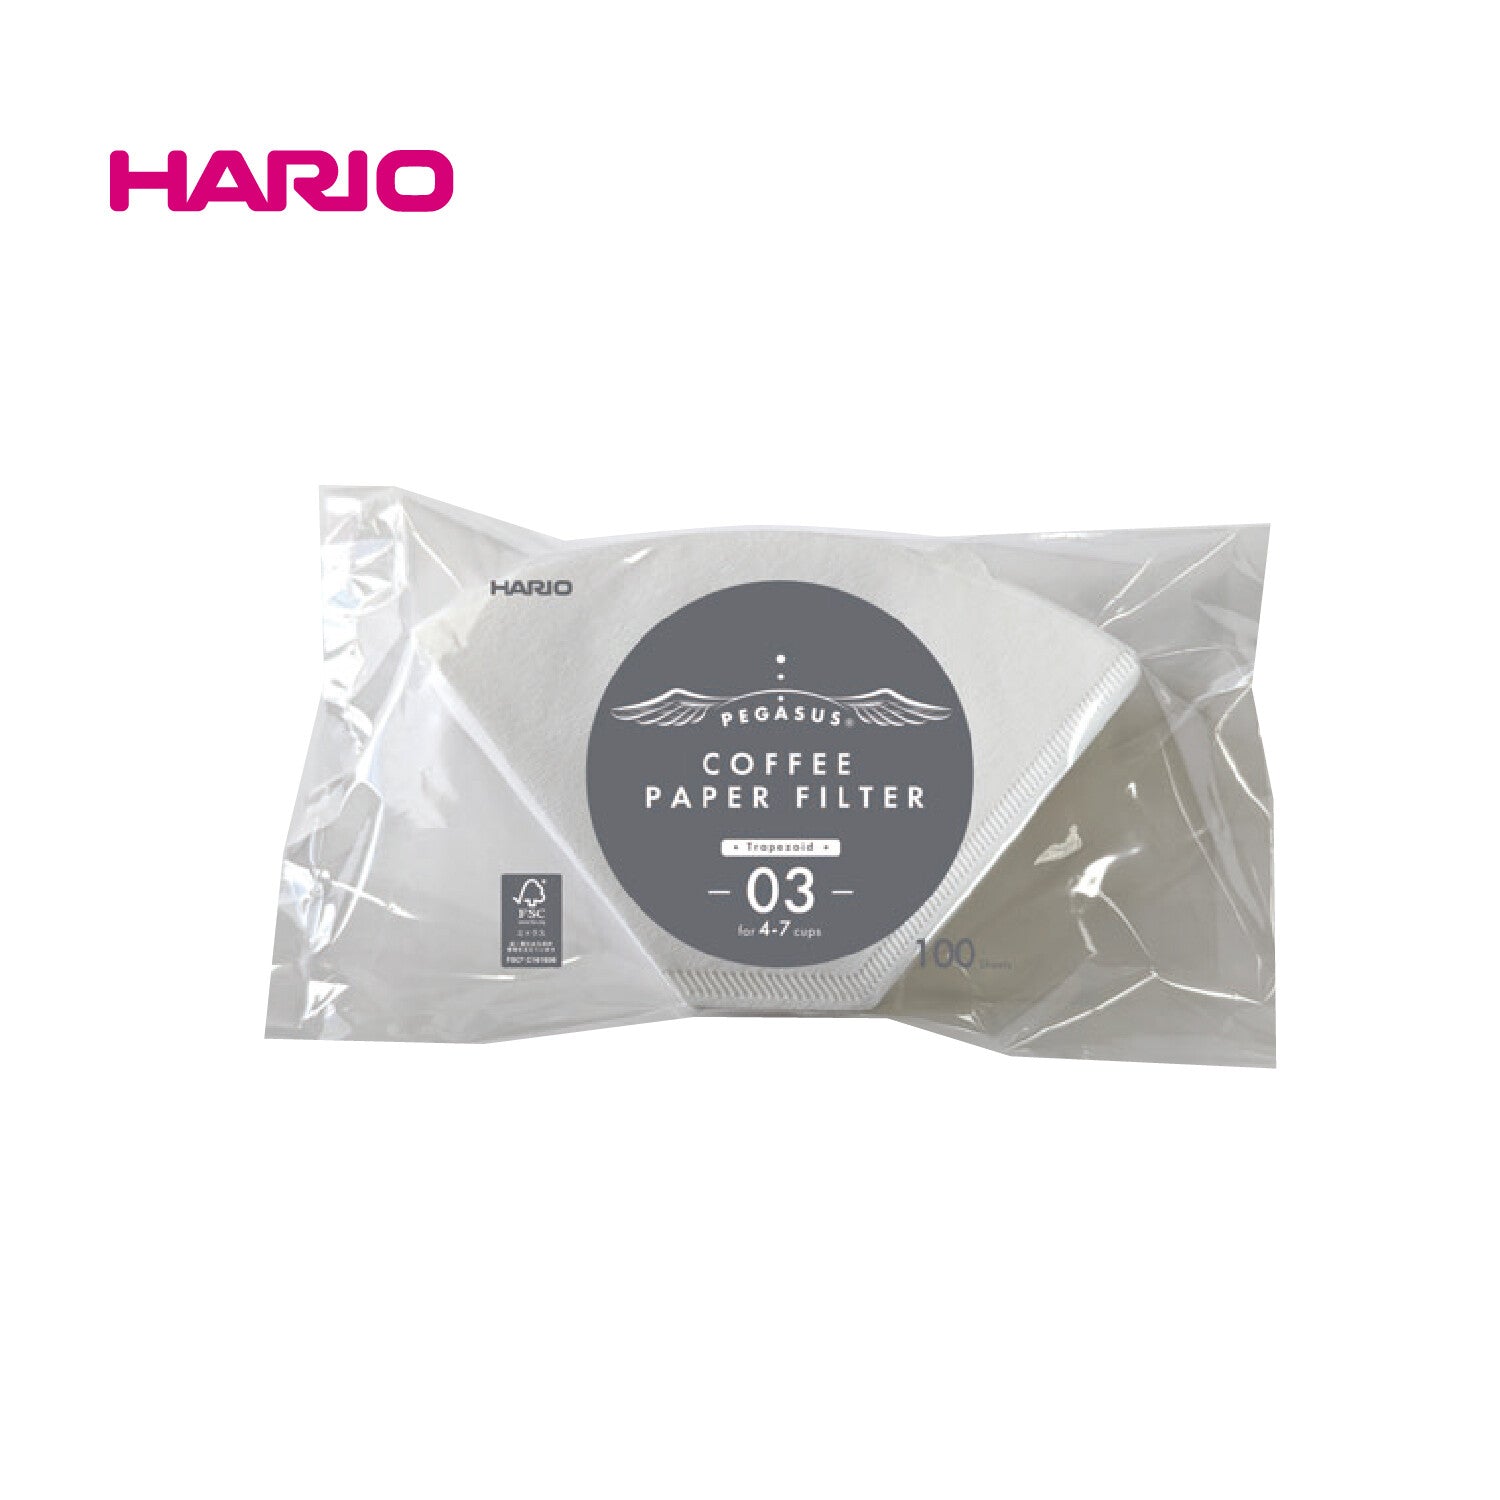 Hario - Trapezoid Pegasus Coffee Paper Filter 03 100 pieces (White)